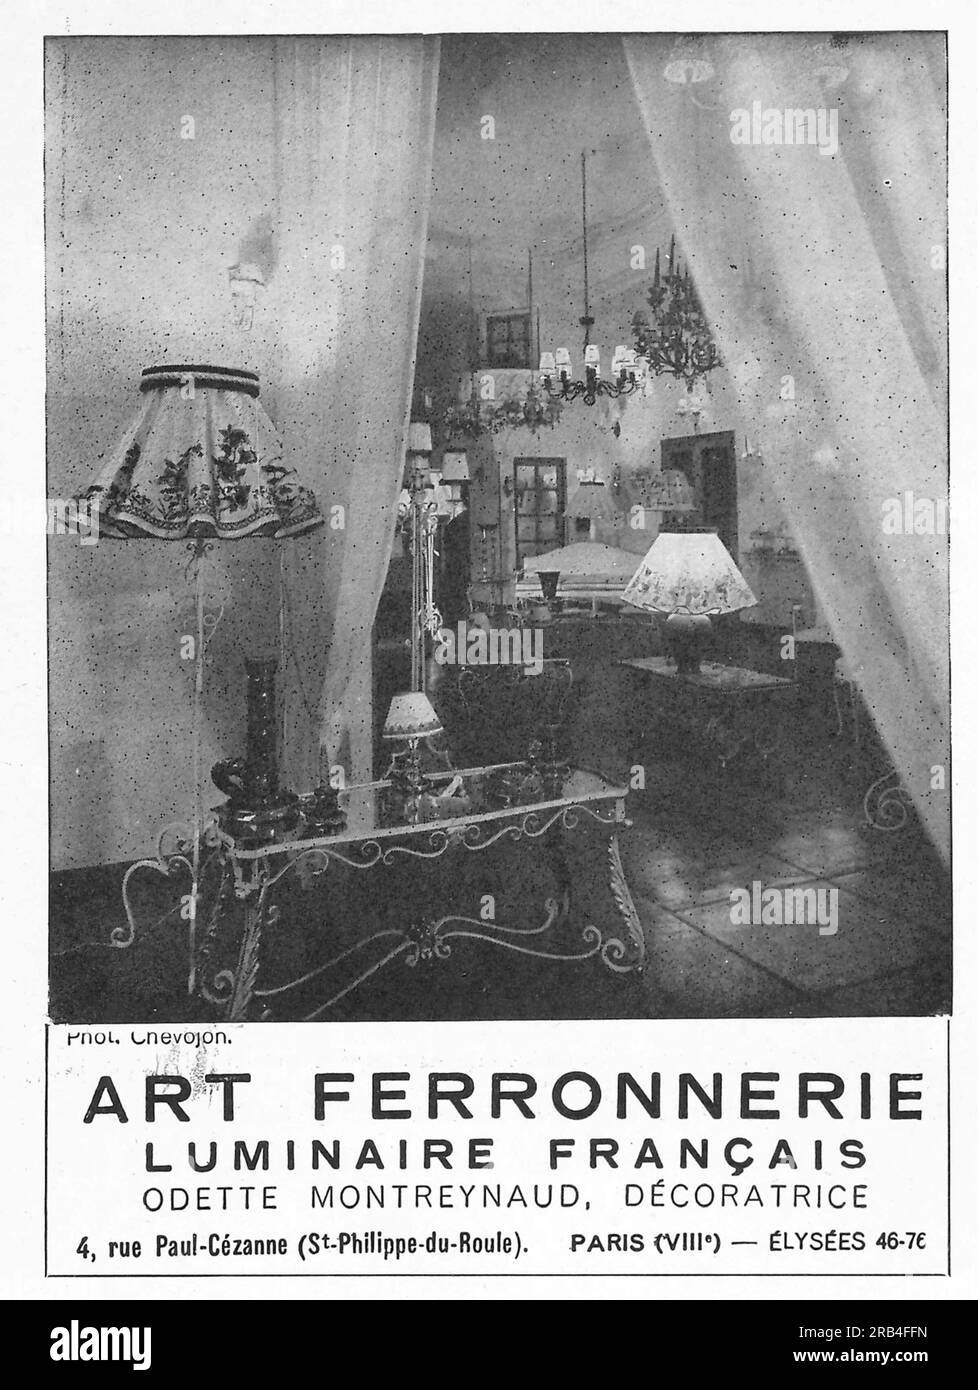 Französische Kunstferronerie-Liuminaire-Werbung in einer französischen Zeitschrift 1950 Stockfoto